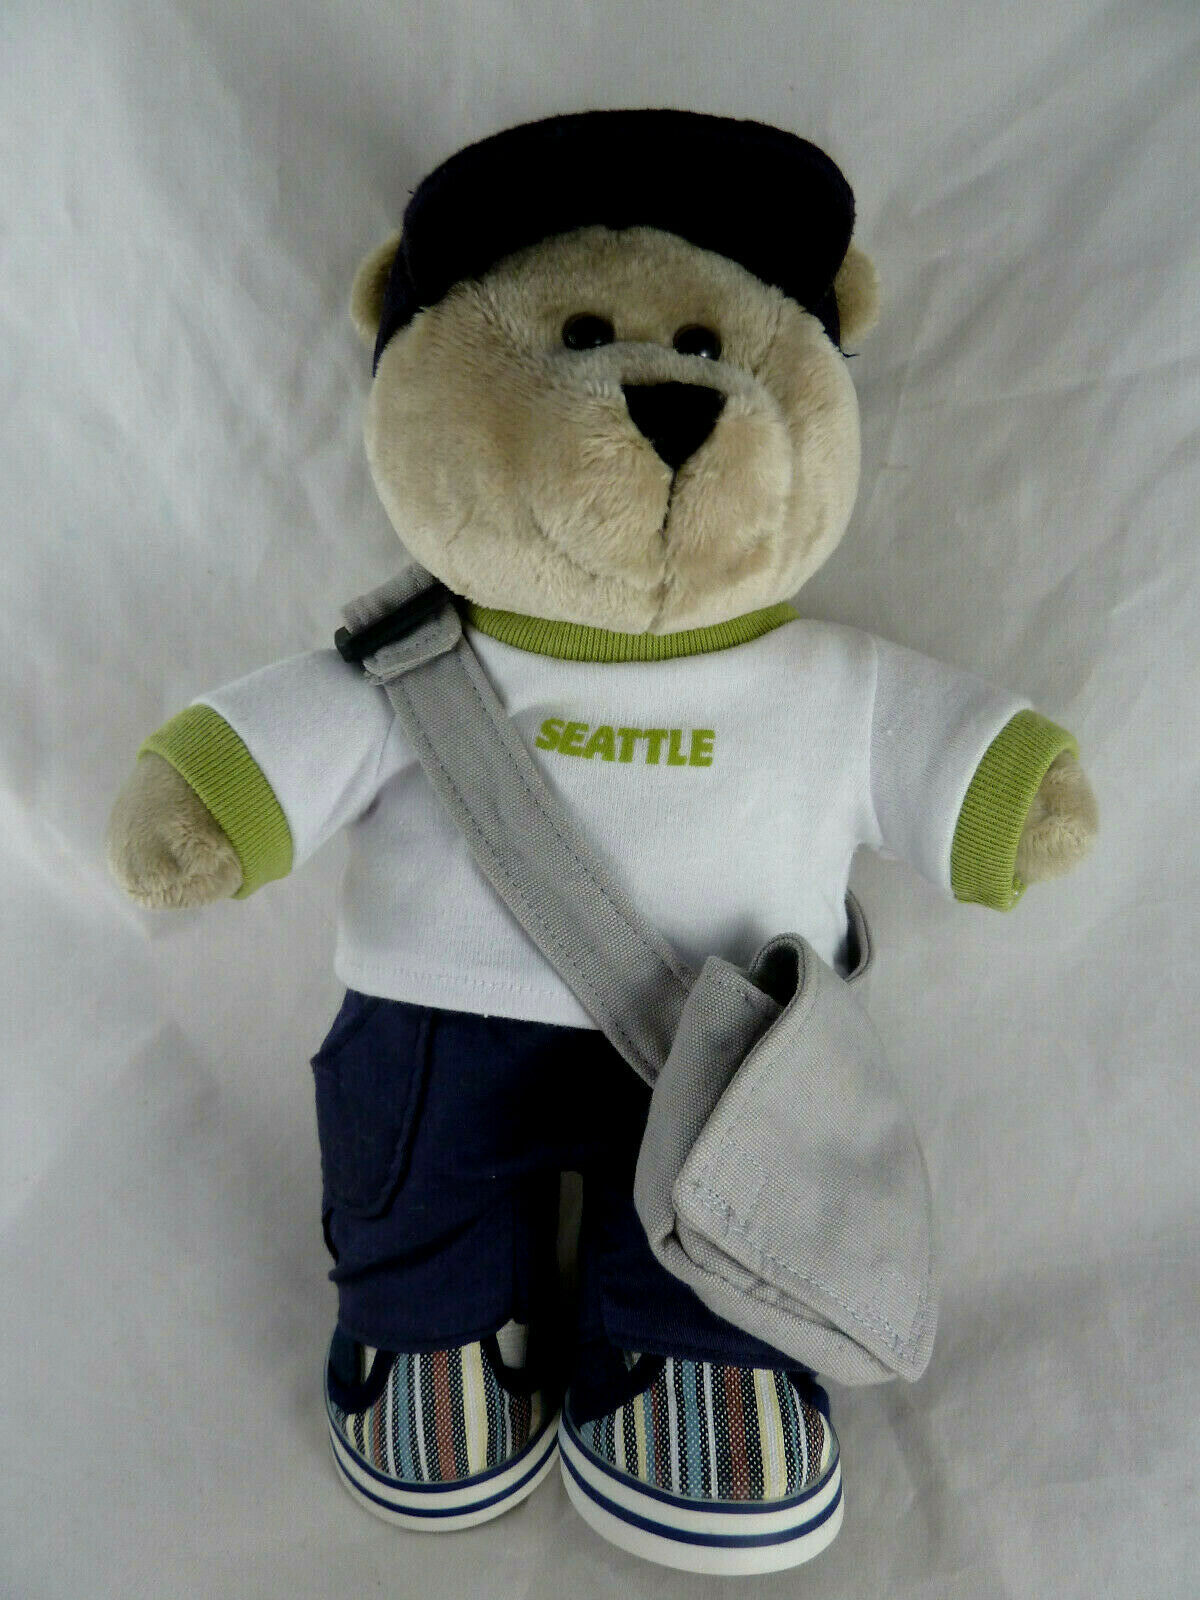 2008 Starbucks Seattle Special Edition Bearista 10" SEATTLE washington doll bear - $13.45